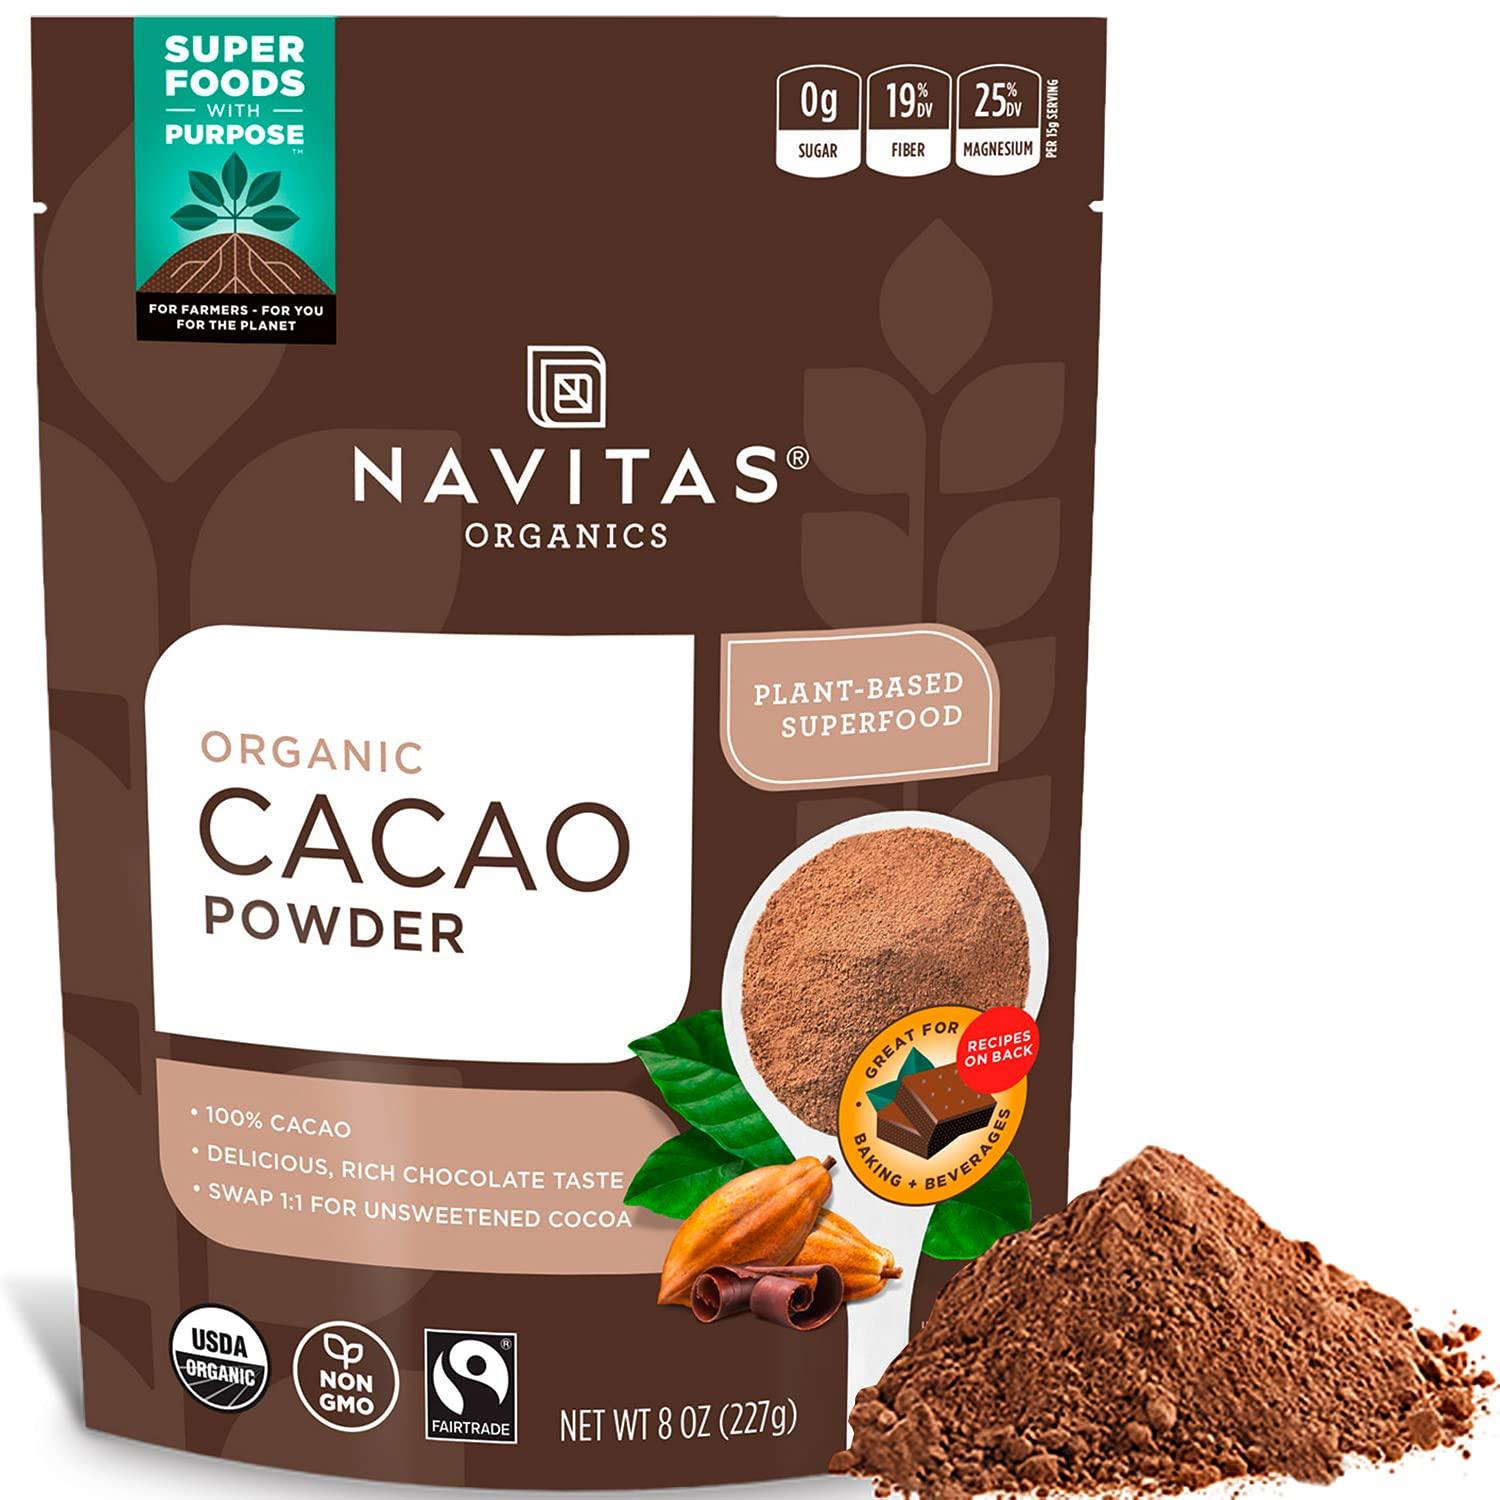 Navitas Organics Cacao Powder for $3.60 Shipped